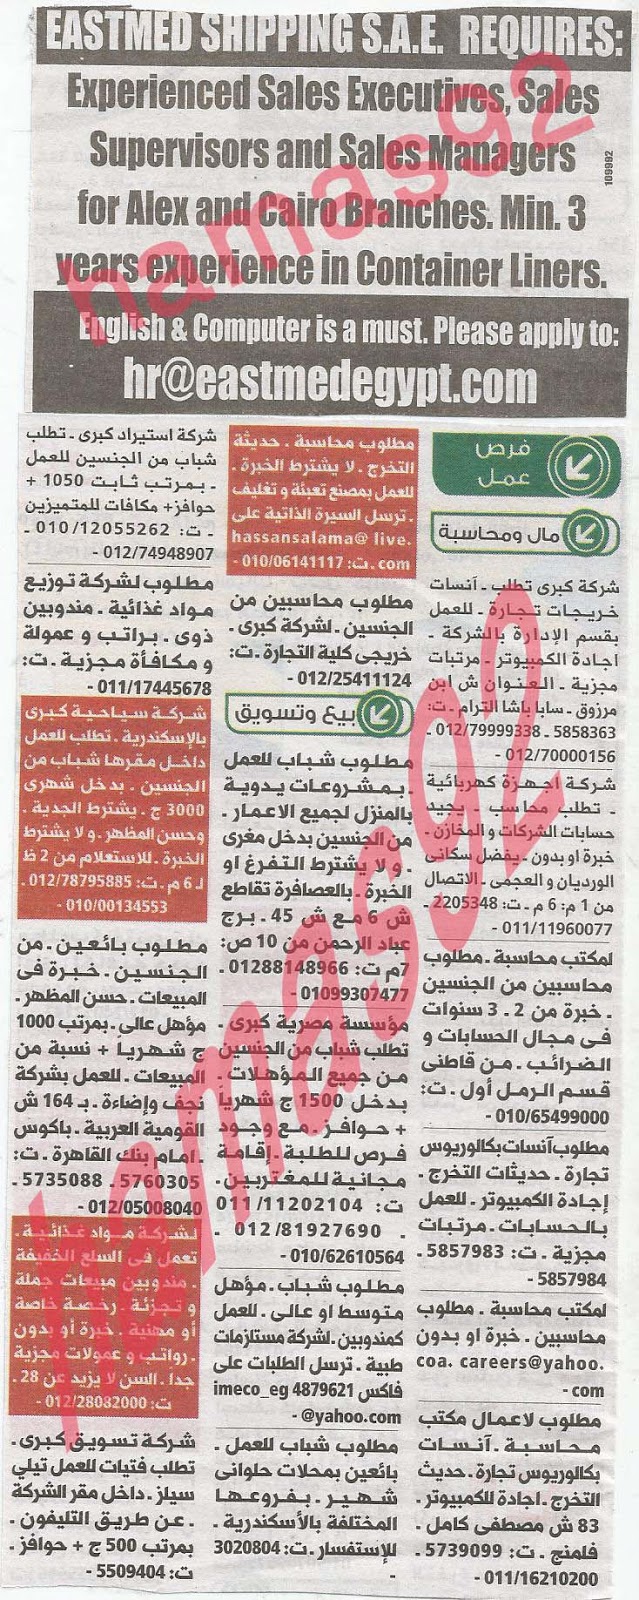 وظائف خالية من جريدة الوسيط الاسكندرية الثلاثاء 11-06-2013 %D9%88+%D8%B3+%D8%B3+4